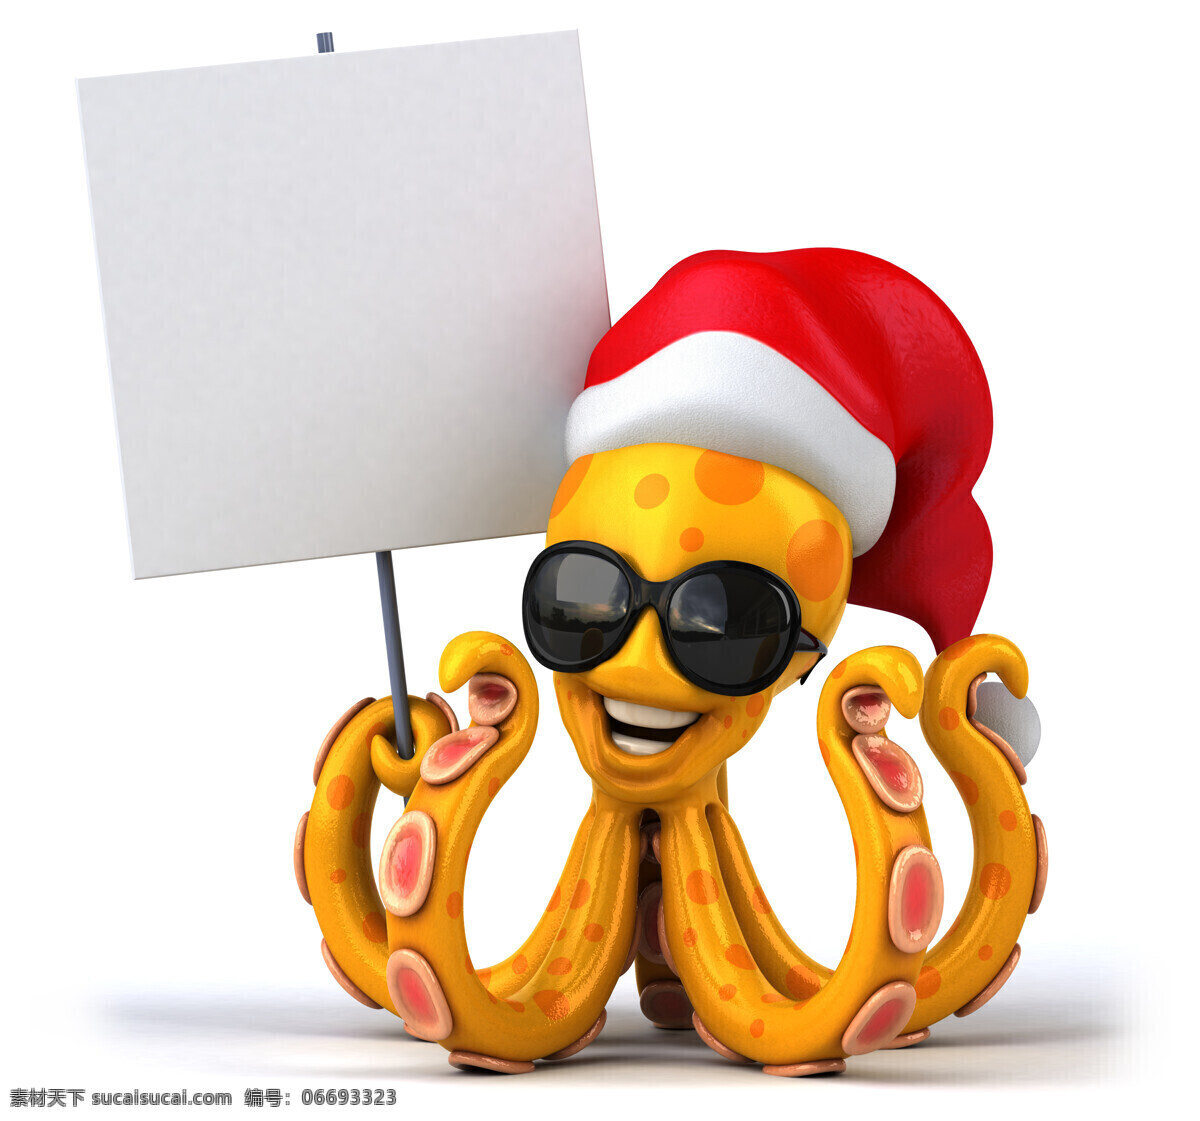 3d 动物图片 3d设计 广告牌 卡通动物 圣诞节 圣诞帽 乌贼 章鱼 3d动物 3d模型素材 其他3d模型